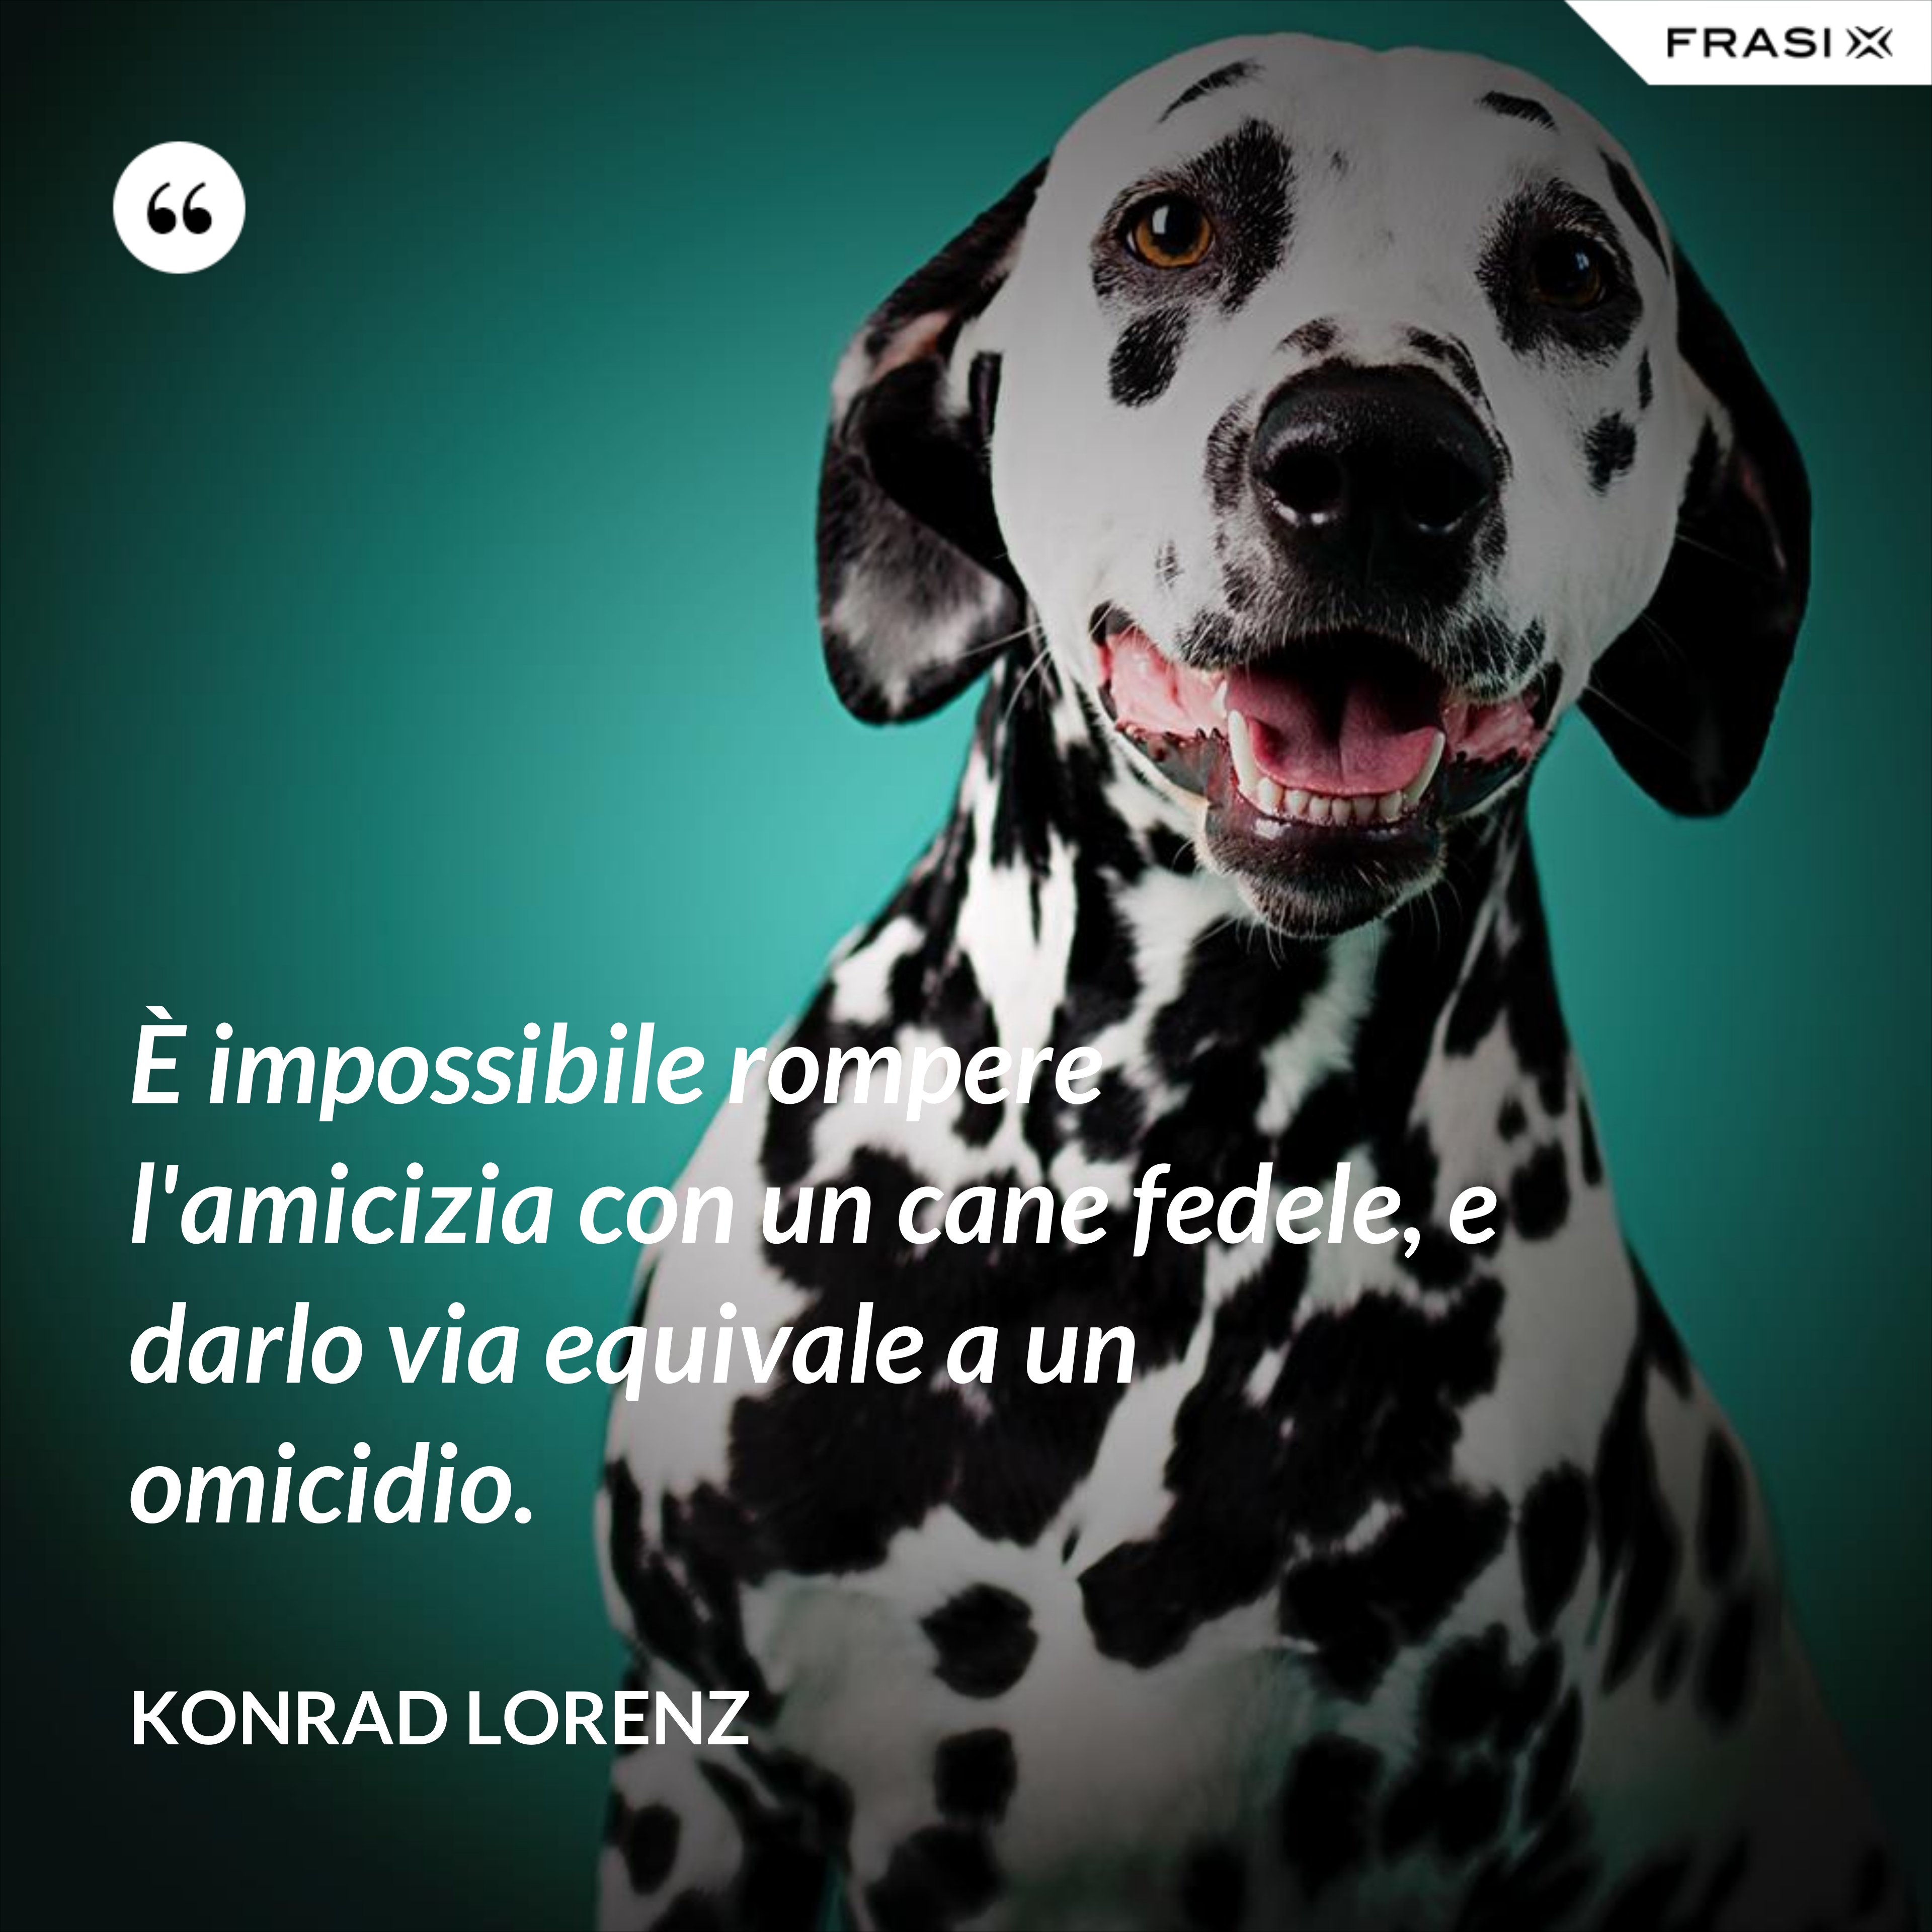 È impossibile rompere l'amicizia con un cane fedele, e darlo via equivale a un omicidio. - Konrad Lorenz